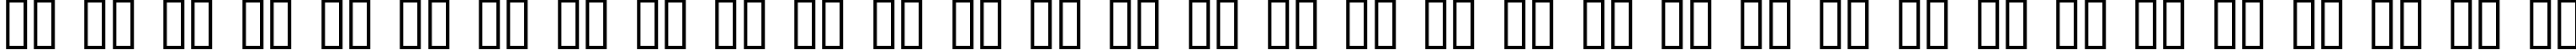 Пример написания русского алфавита шрифтом SandCastles